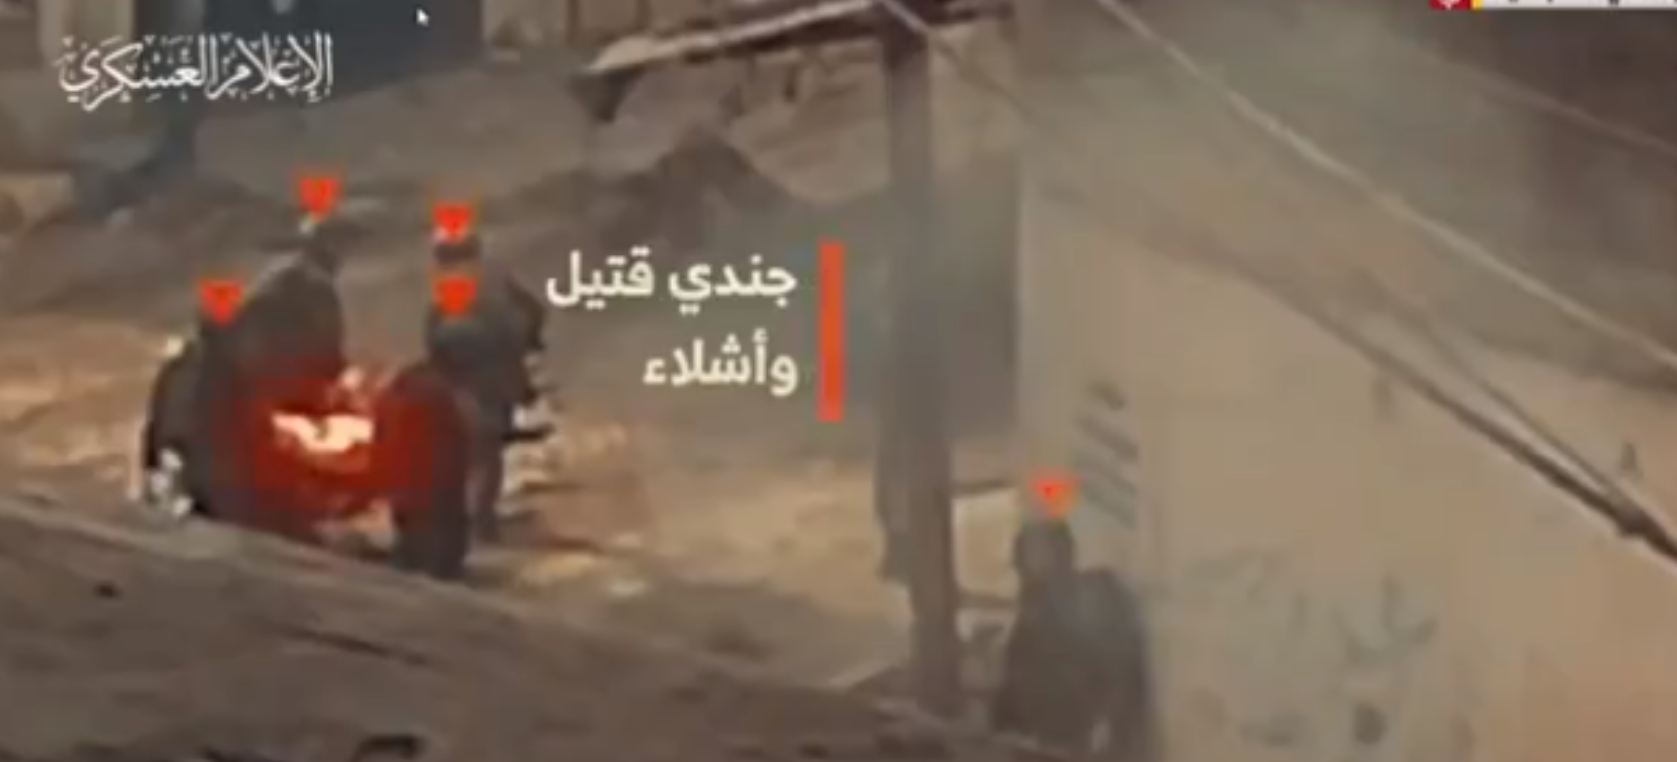 Νέο βίντεο της Χαμάς: Μαχητές της ρίχνουν χειροβομβίδες και πυροβολούν κατά Ισραηλινών στρατιωτών